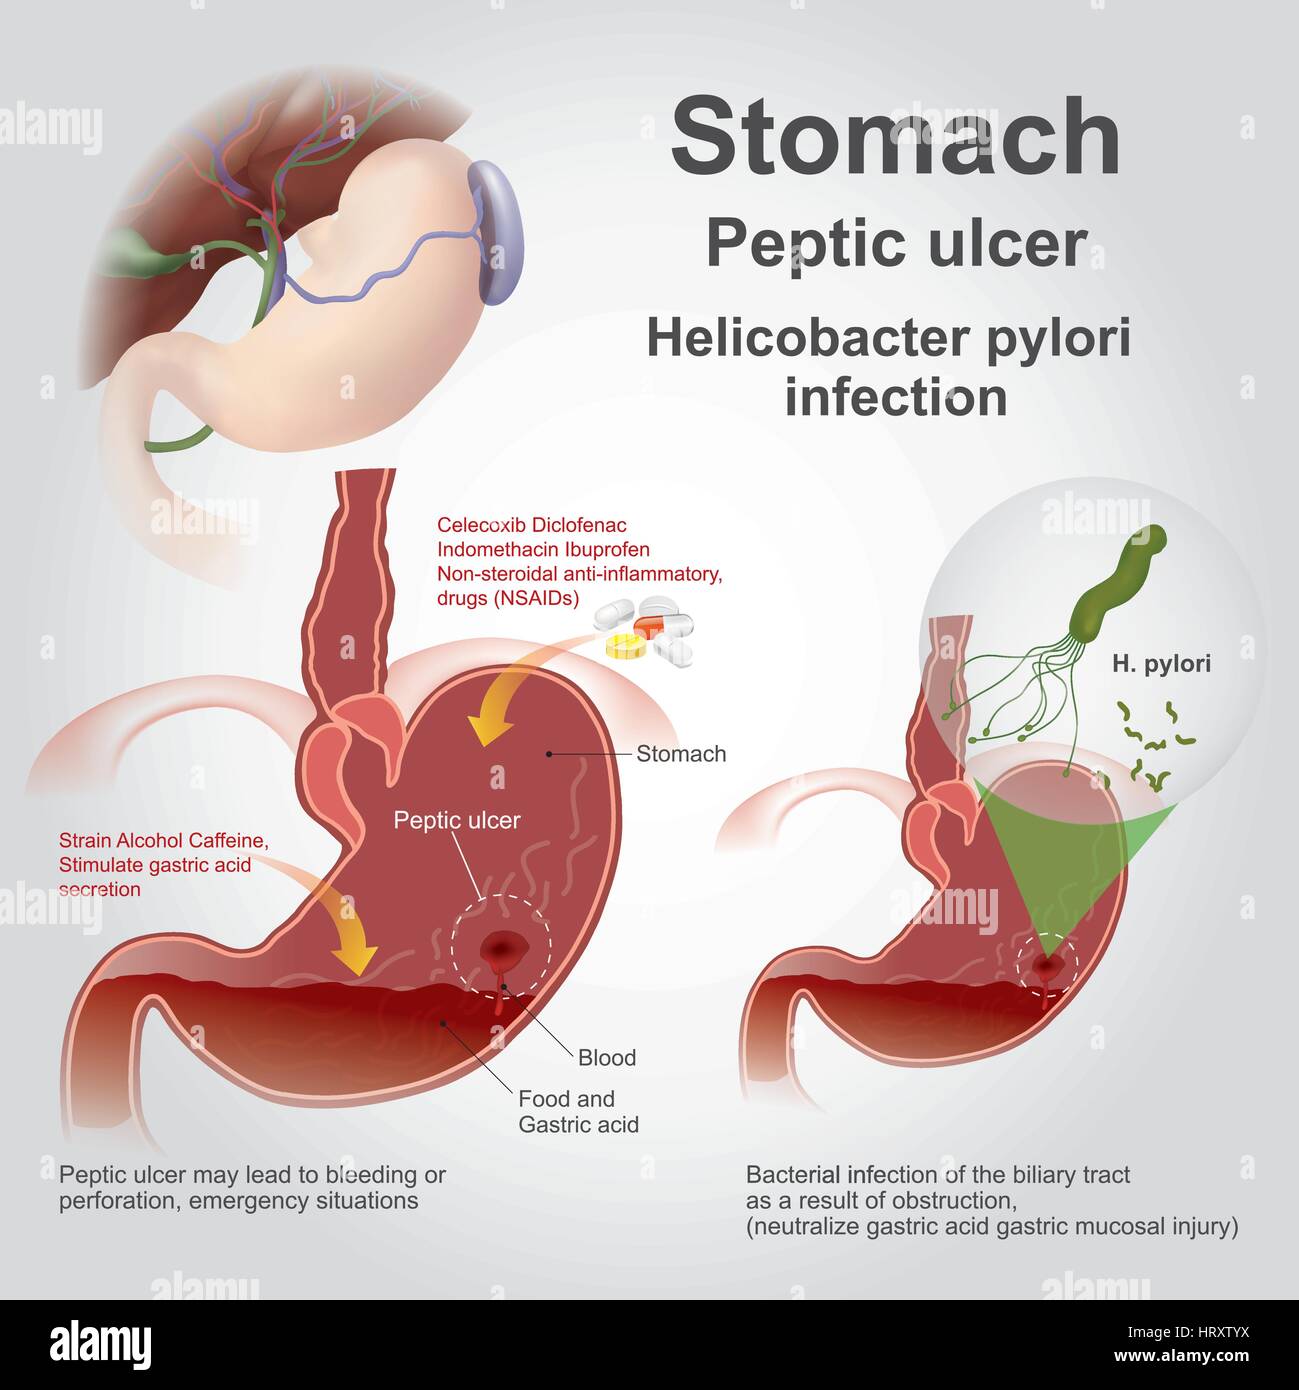 La maladie ulcéreuse eptic, aussi connu comme un ulcère peptique ou d'ulcère de l'estomac, est une rupture dans la paroi de l'estomac, première partie de l'intestin grêle, ou d'occ Illustration de Vecteur